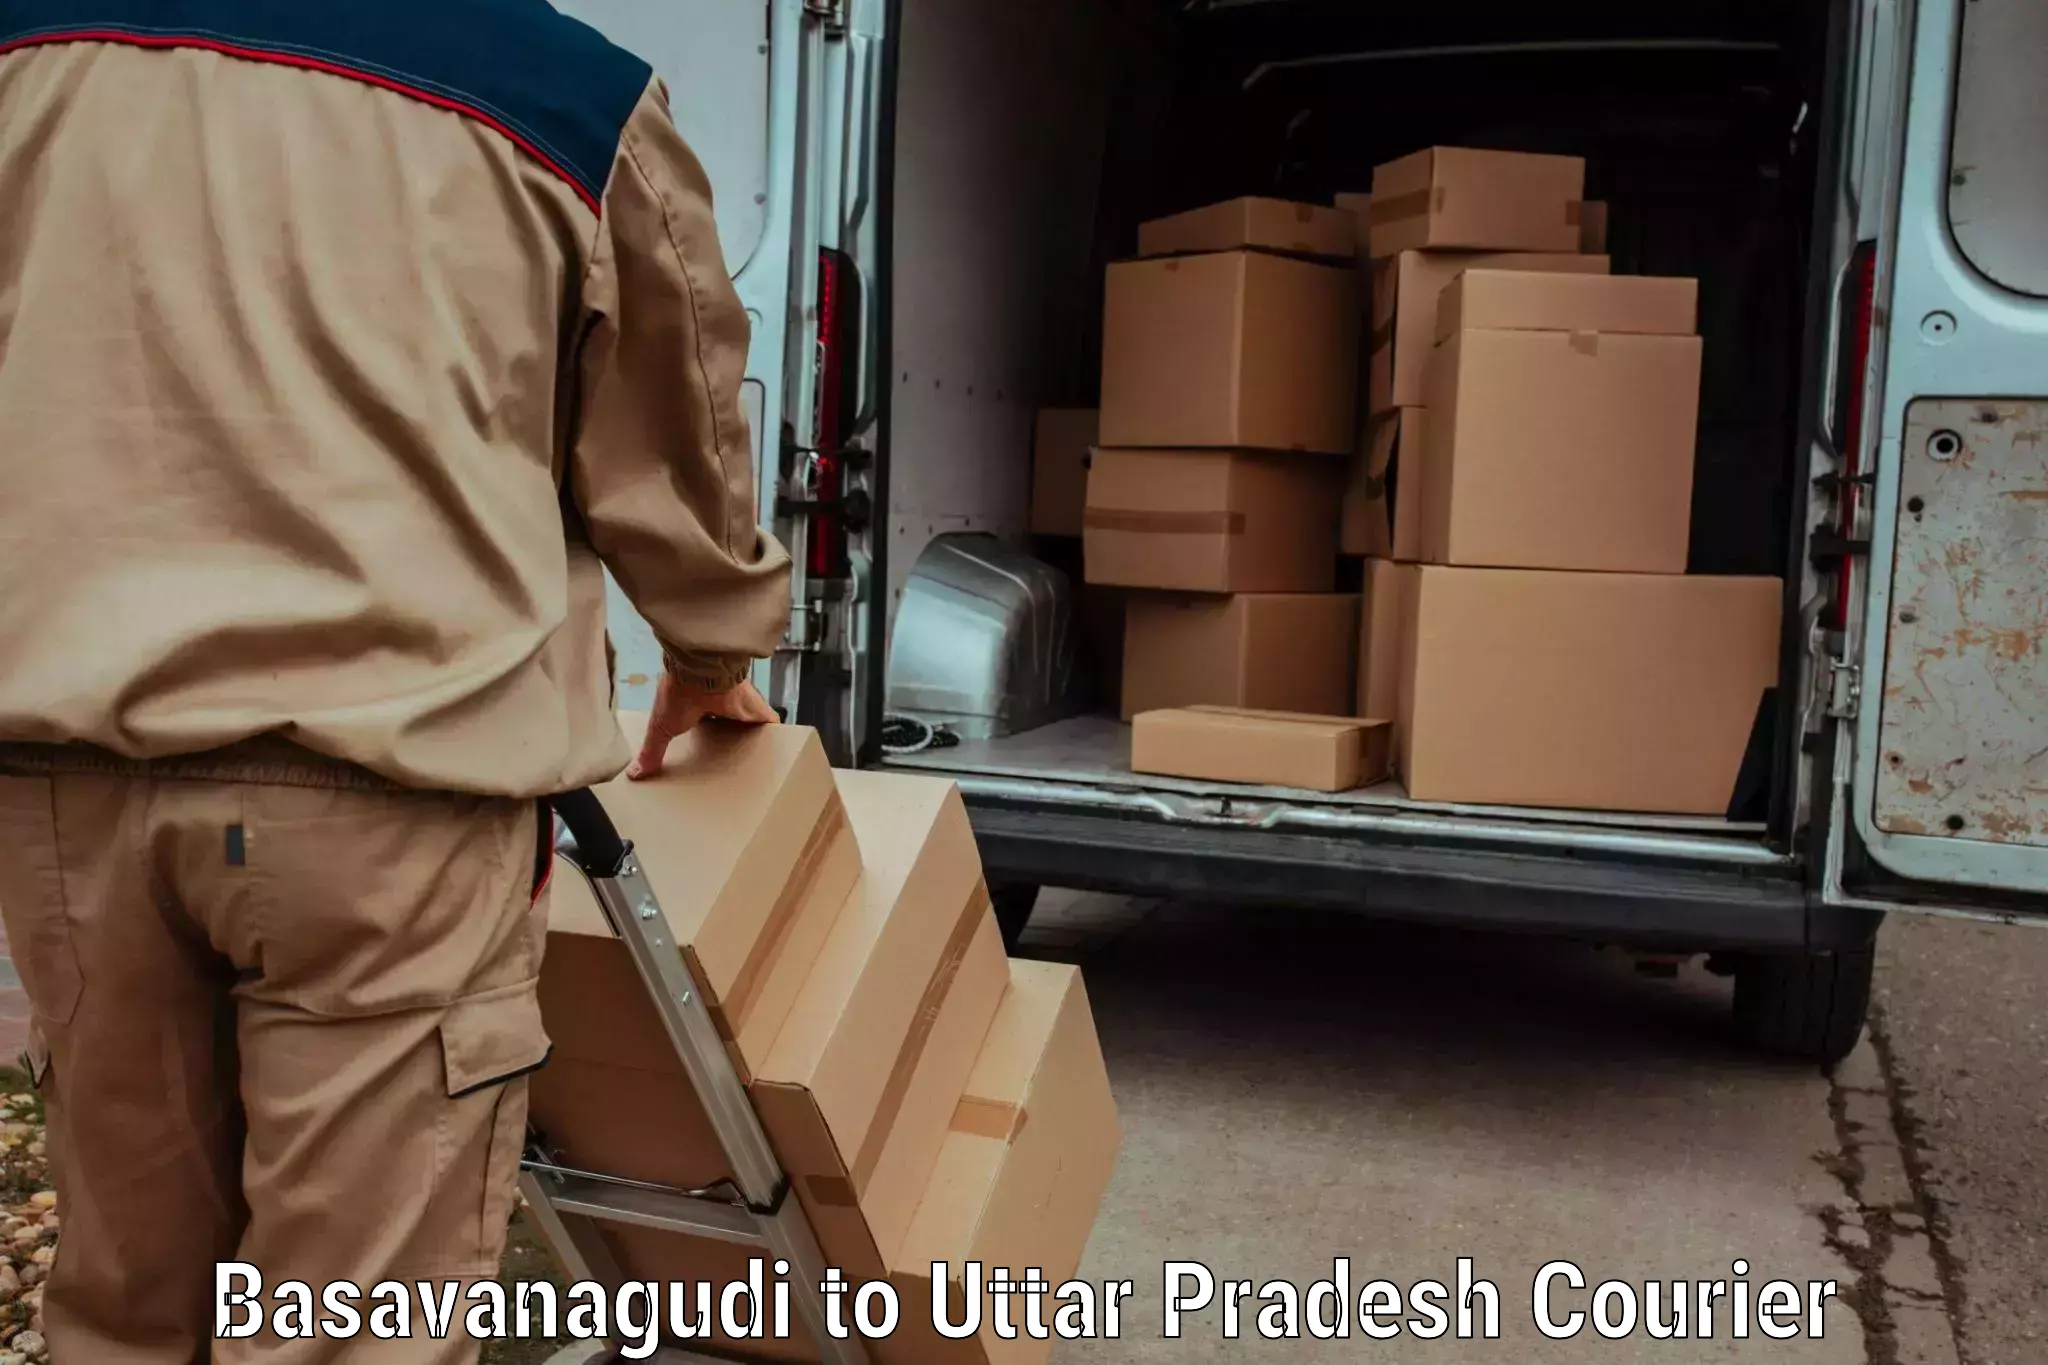 Courier insurance in Basavanagudi to Babrala